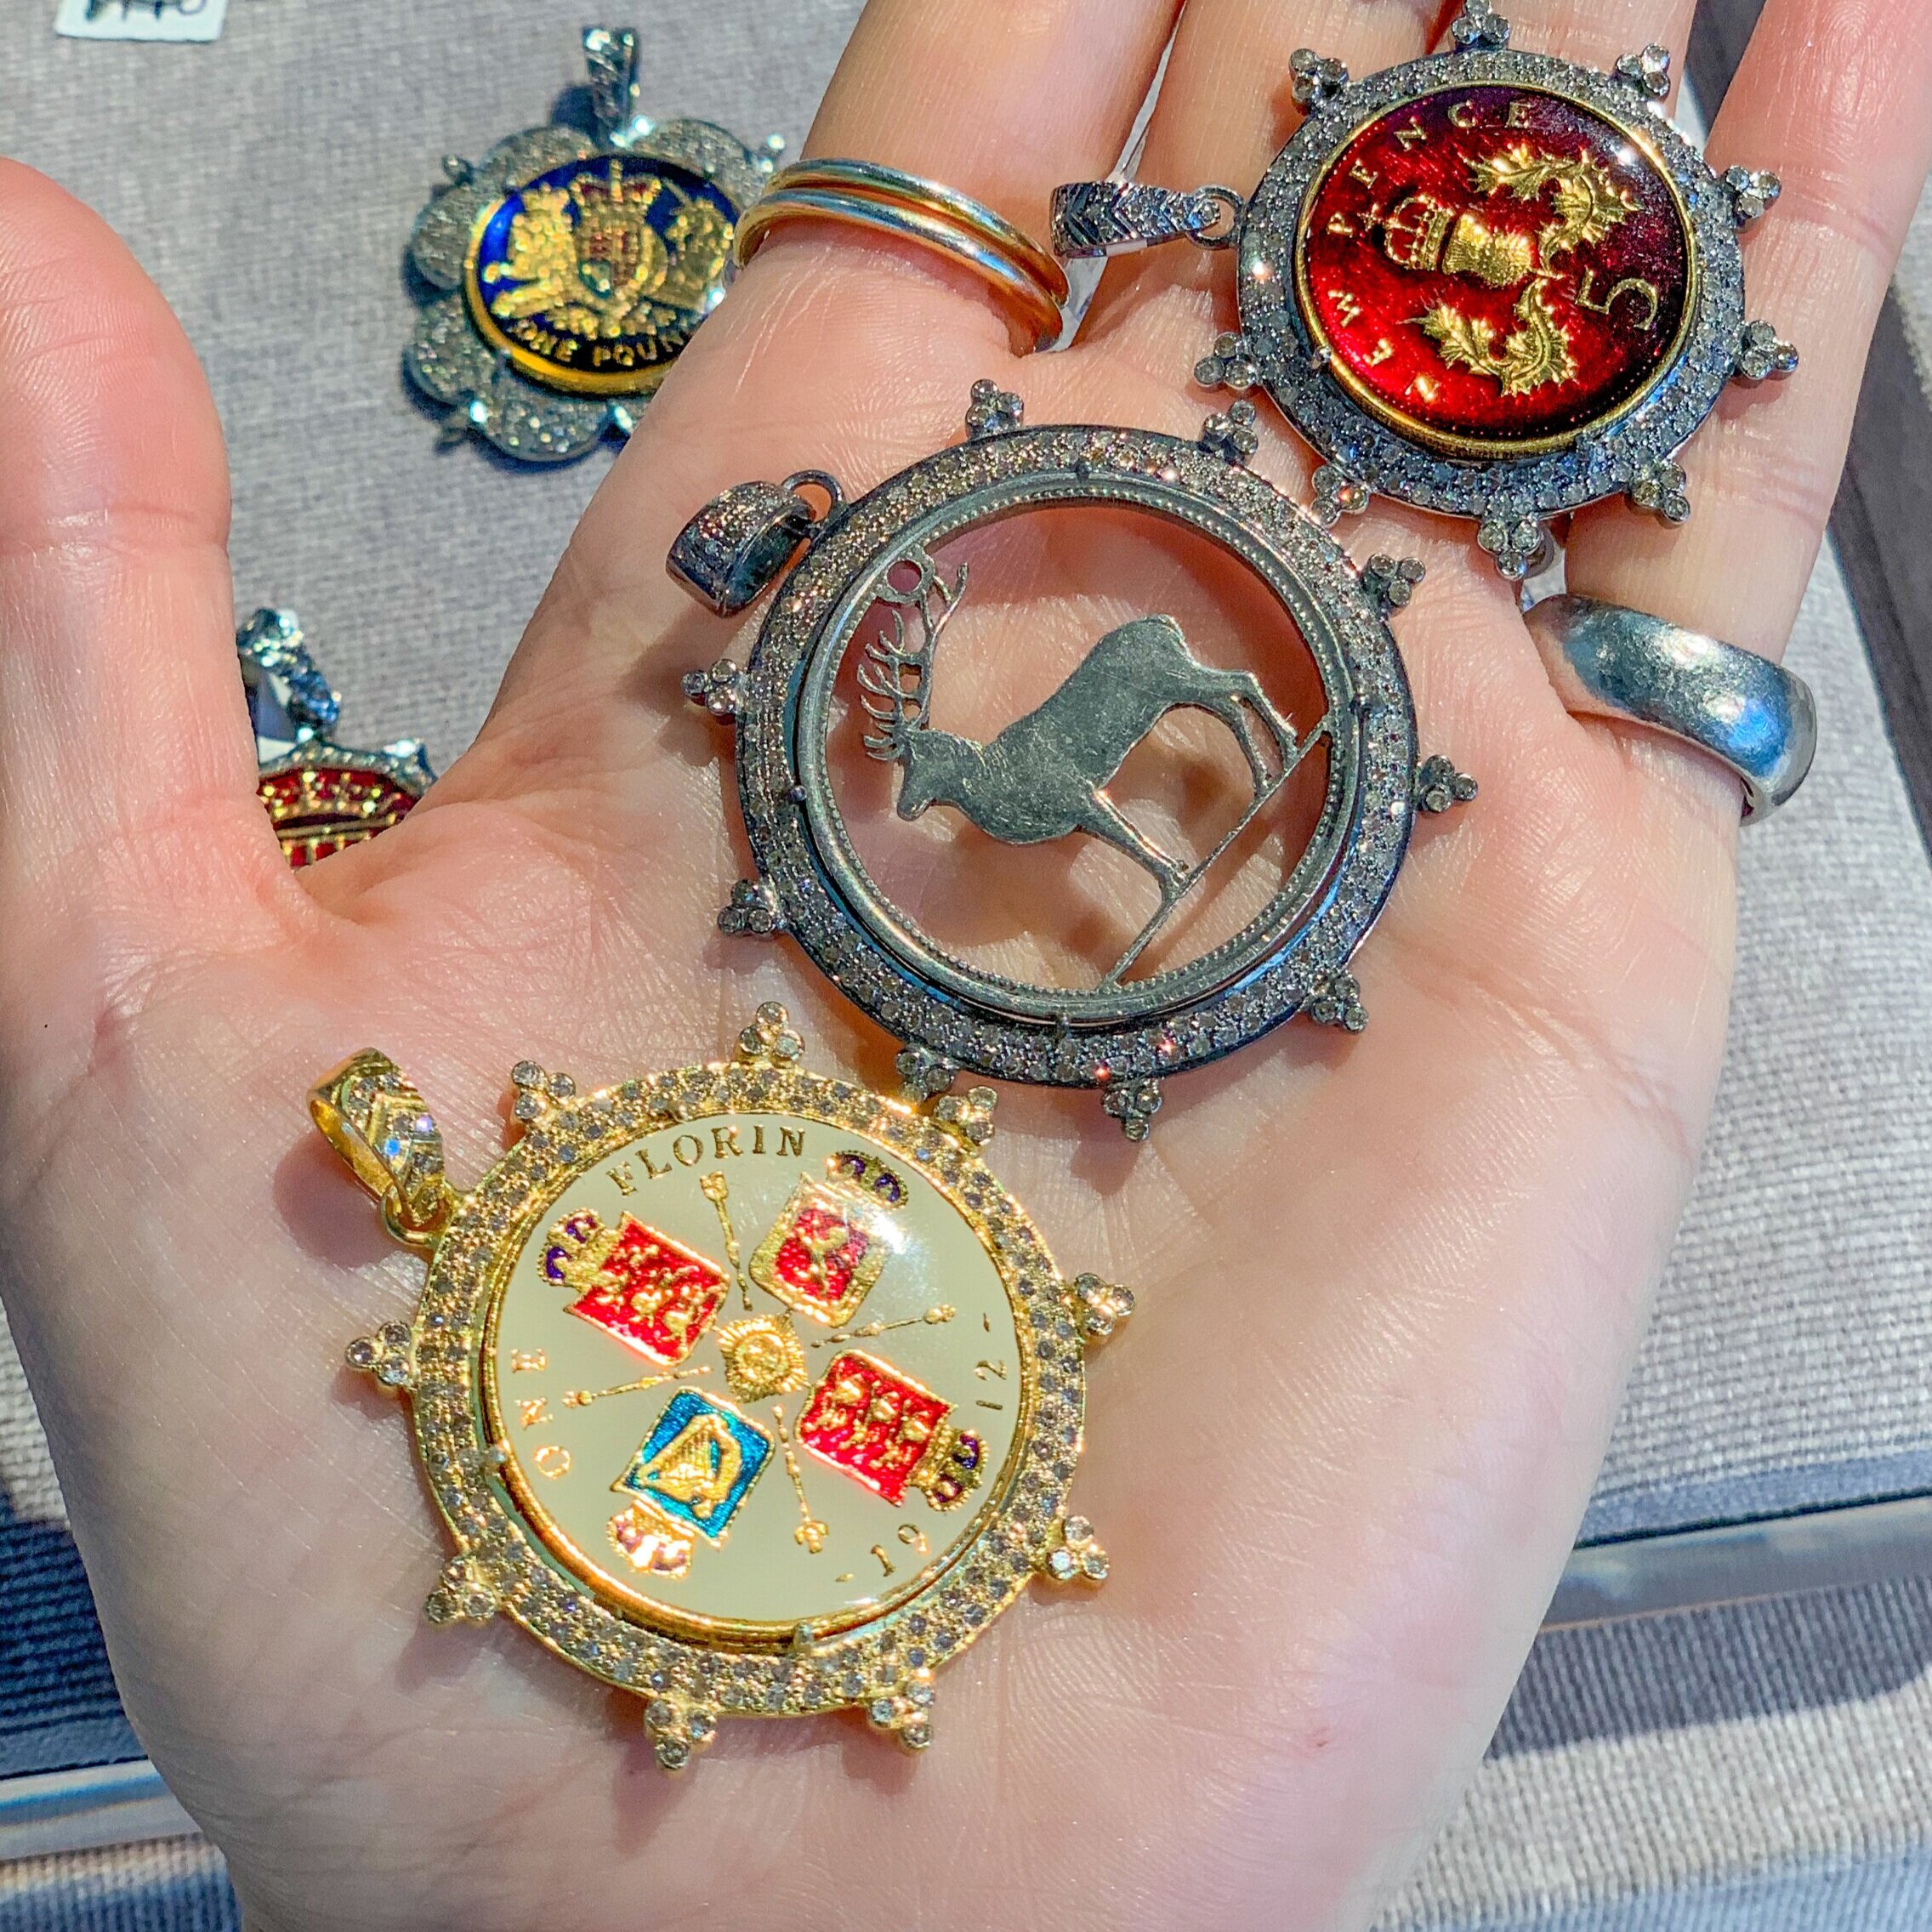 Kara's happy jewelry: Her vintage coin pendants